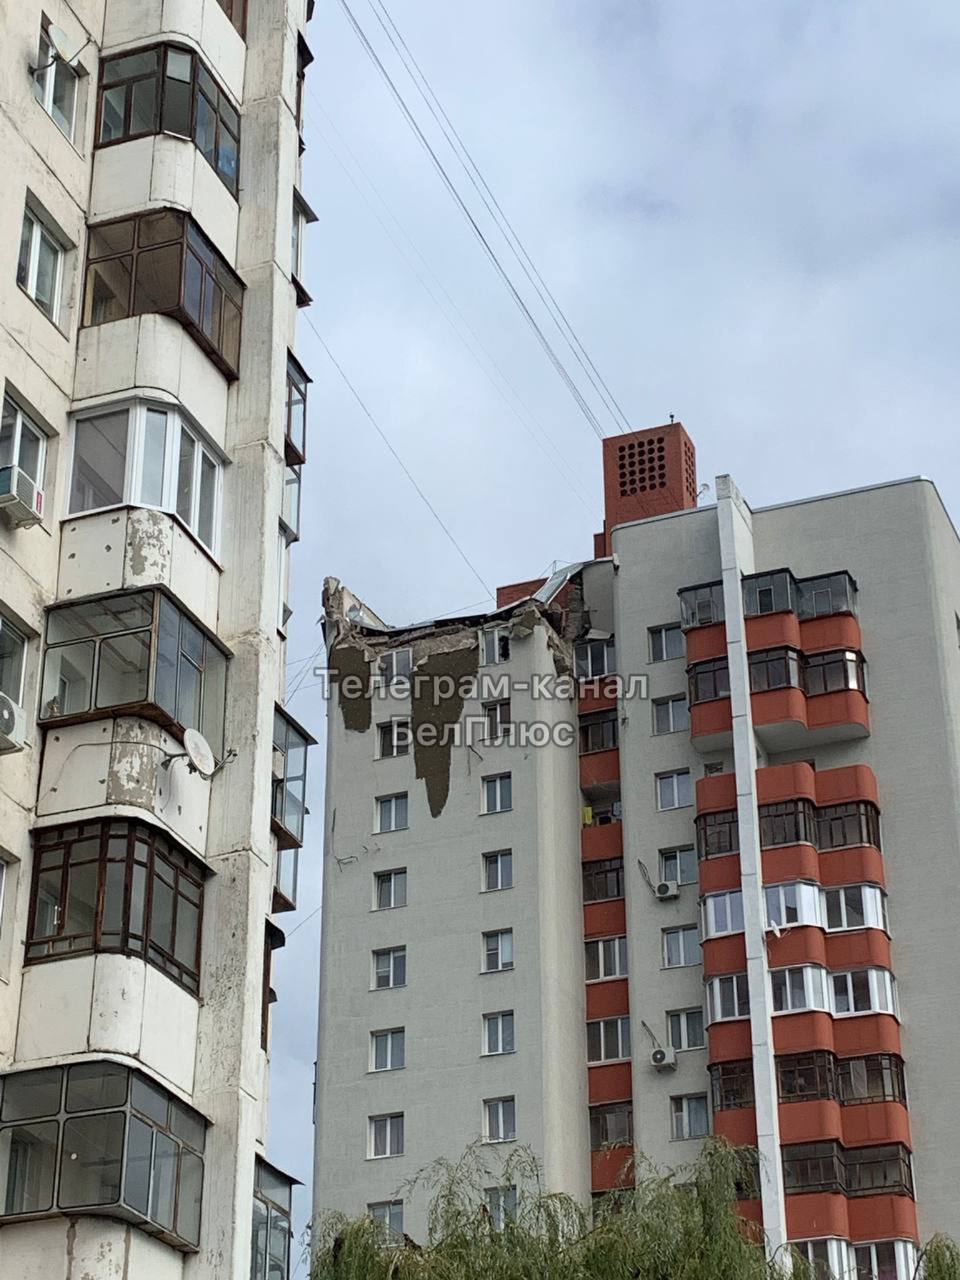 В Белгороде обломки ракеты упали на многоэтажку, есть разрушения — СМИ (фото, видео) - 7 - изображение